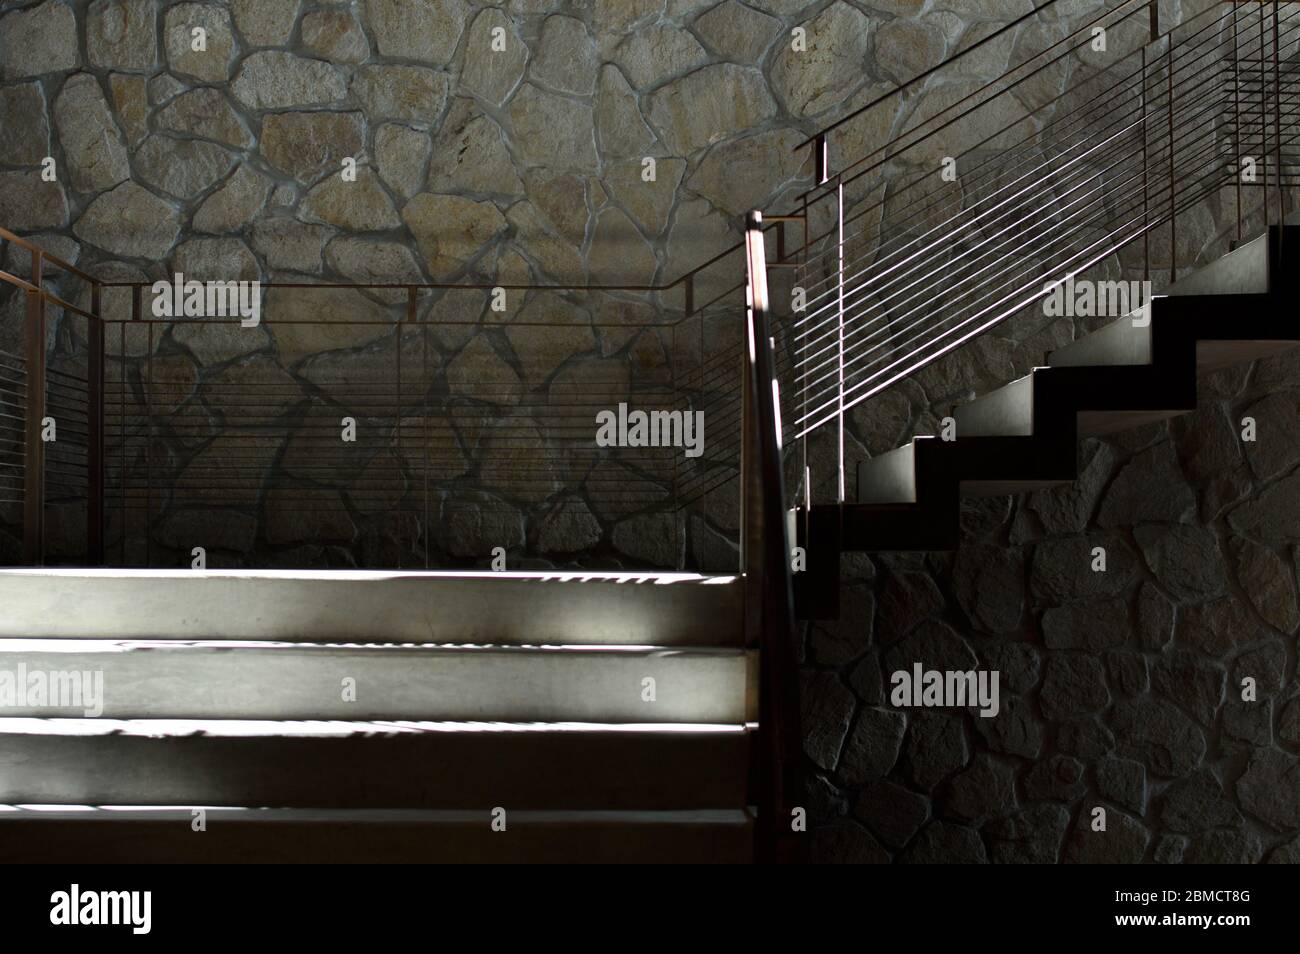 Escaliers industriels en béton et en métal au mur en pierre Banque D'Images